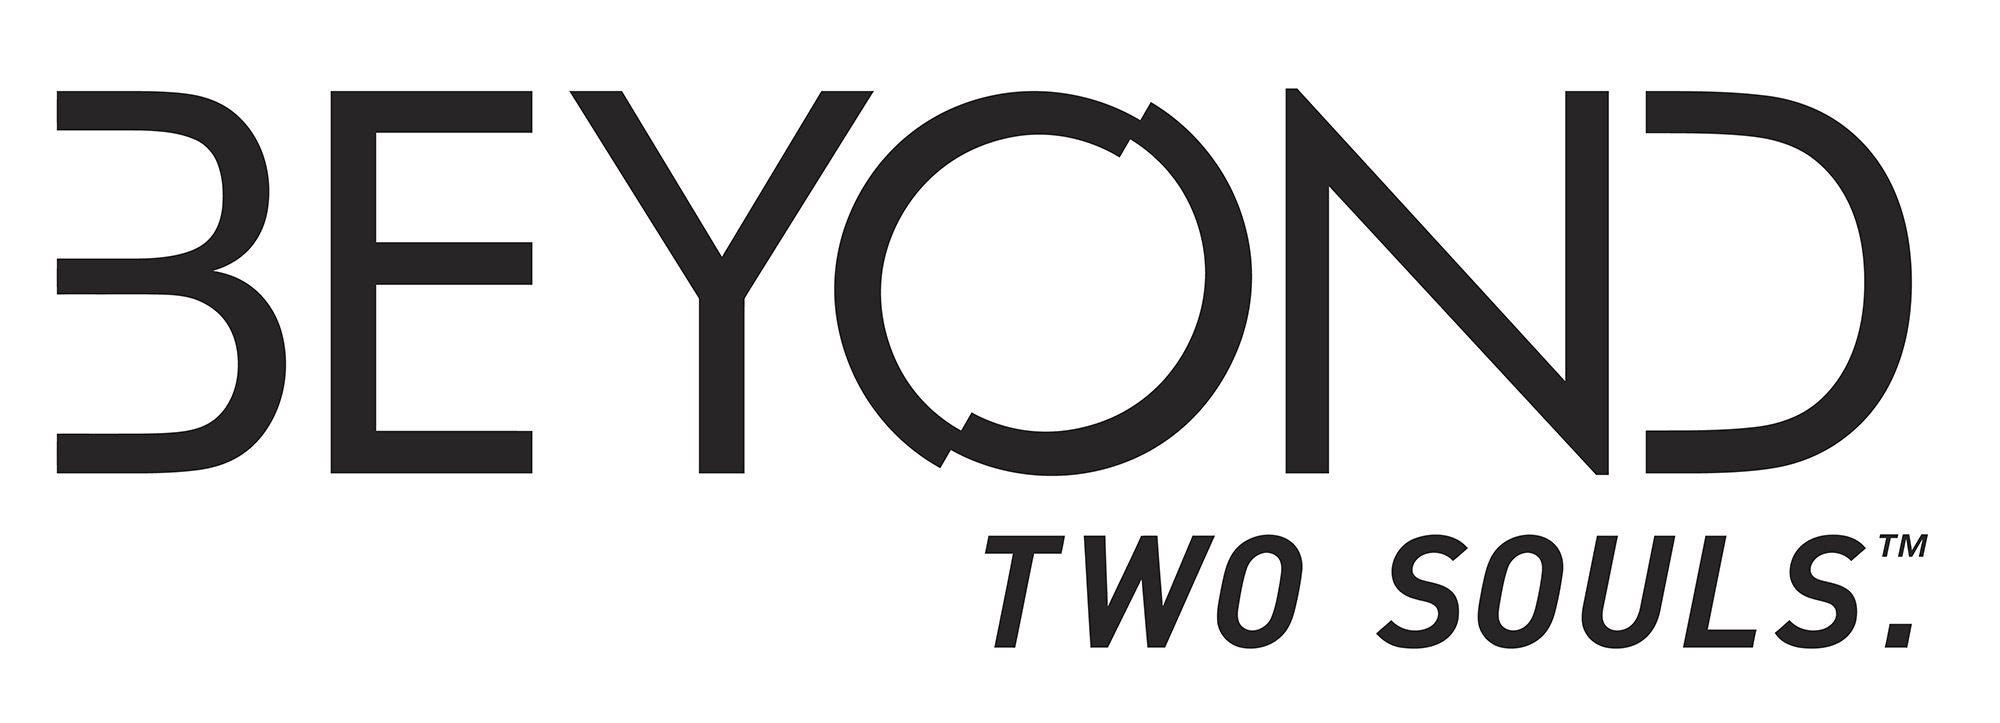 Beyond Two Souls Logo 001